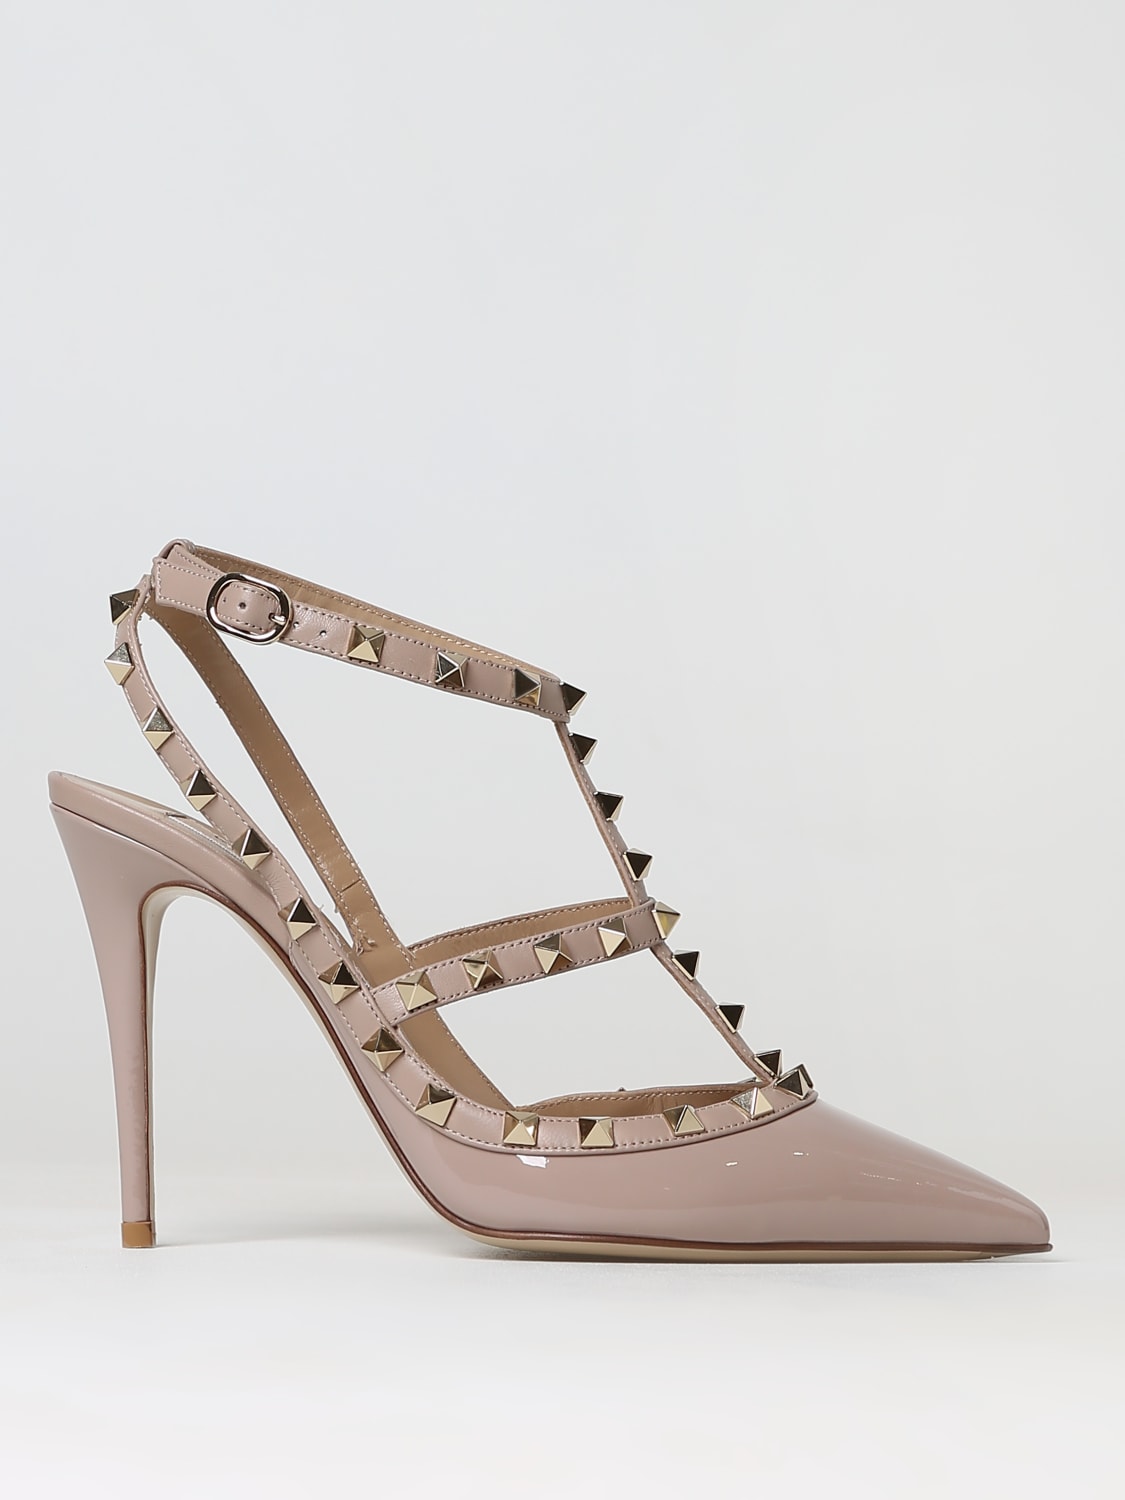 VALENTINO Rockstud pumps in patent leather - Blush Pink | Valentino Garavani high heel 3W2S0393VNW online at GIGLIO.COM